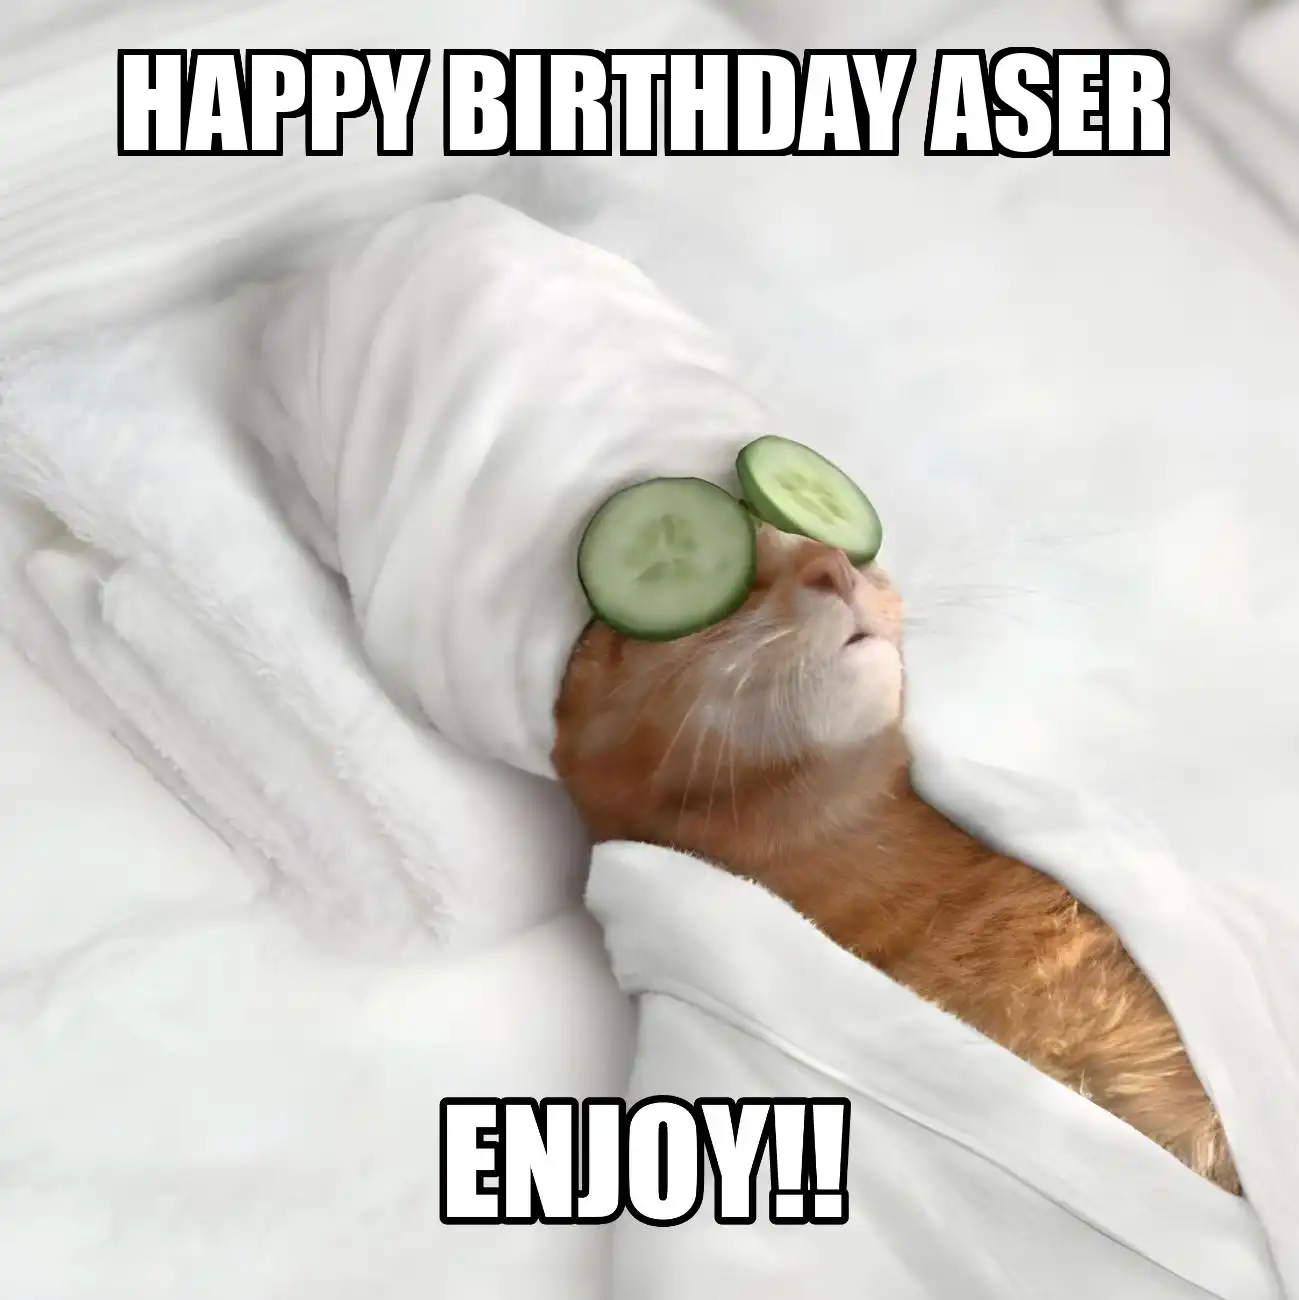 Happy Birthday Aser Enjoy Cat Meme